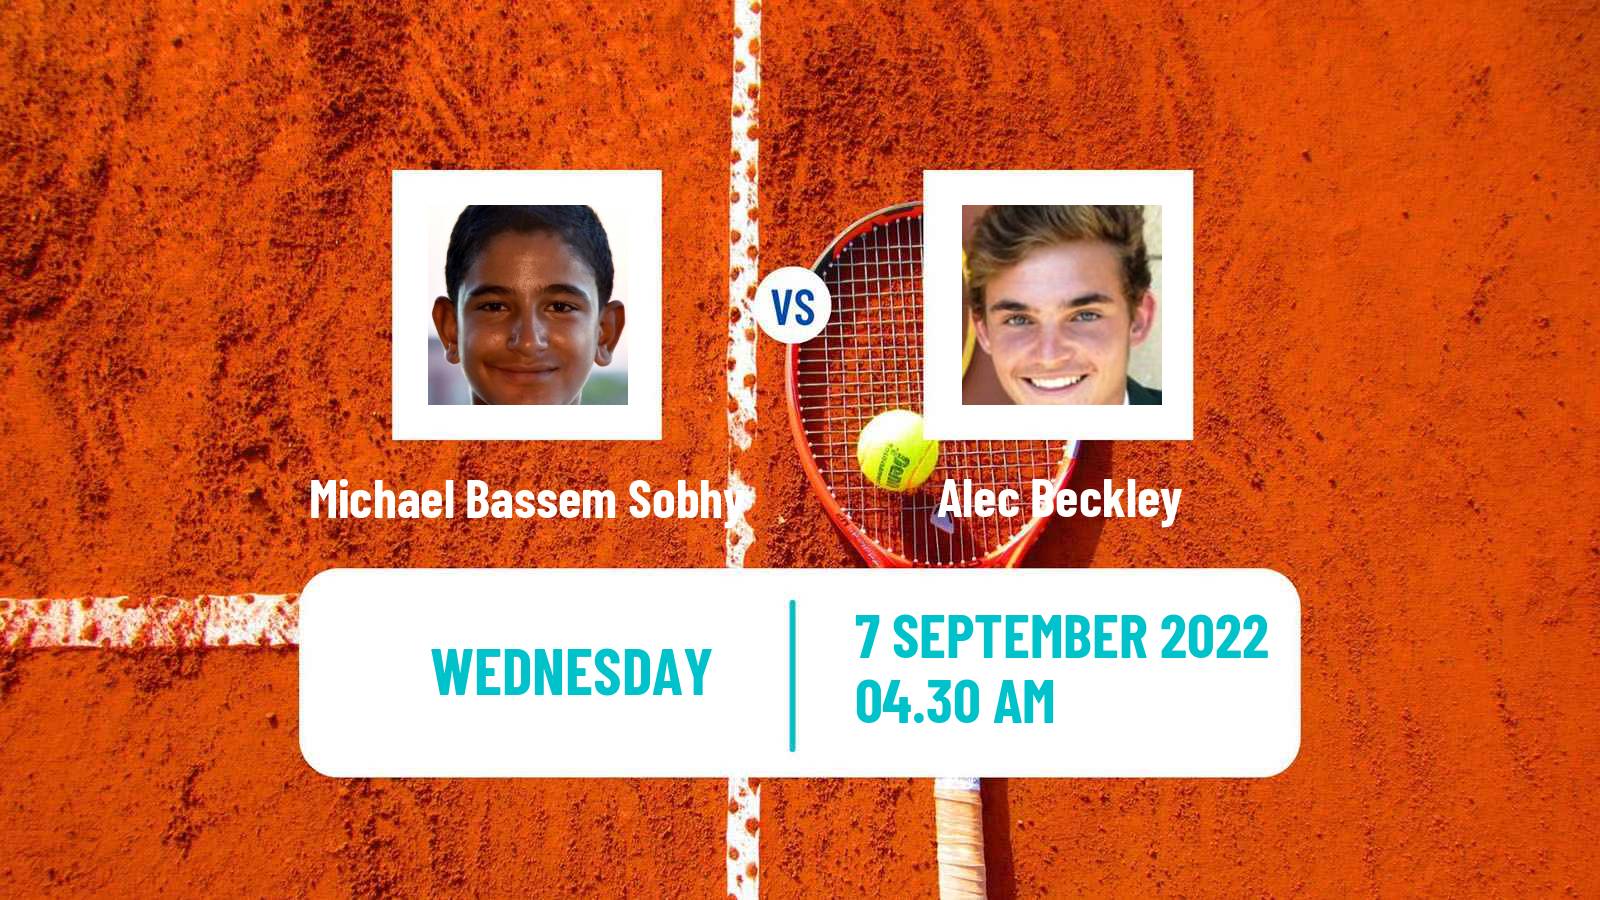 Tennis ITF Tournaments Michael Bassem Sobhy - Alec Beckley